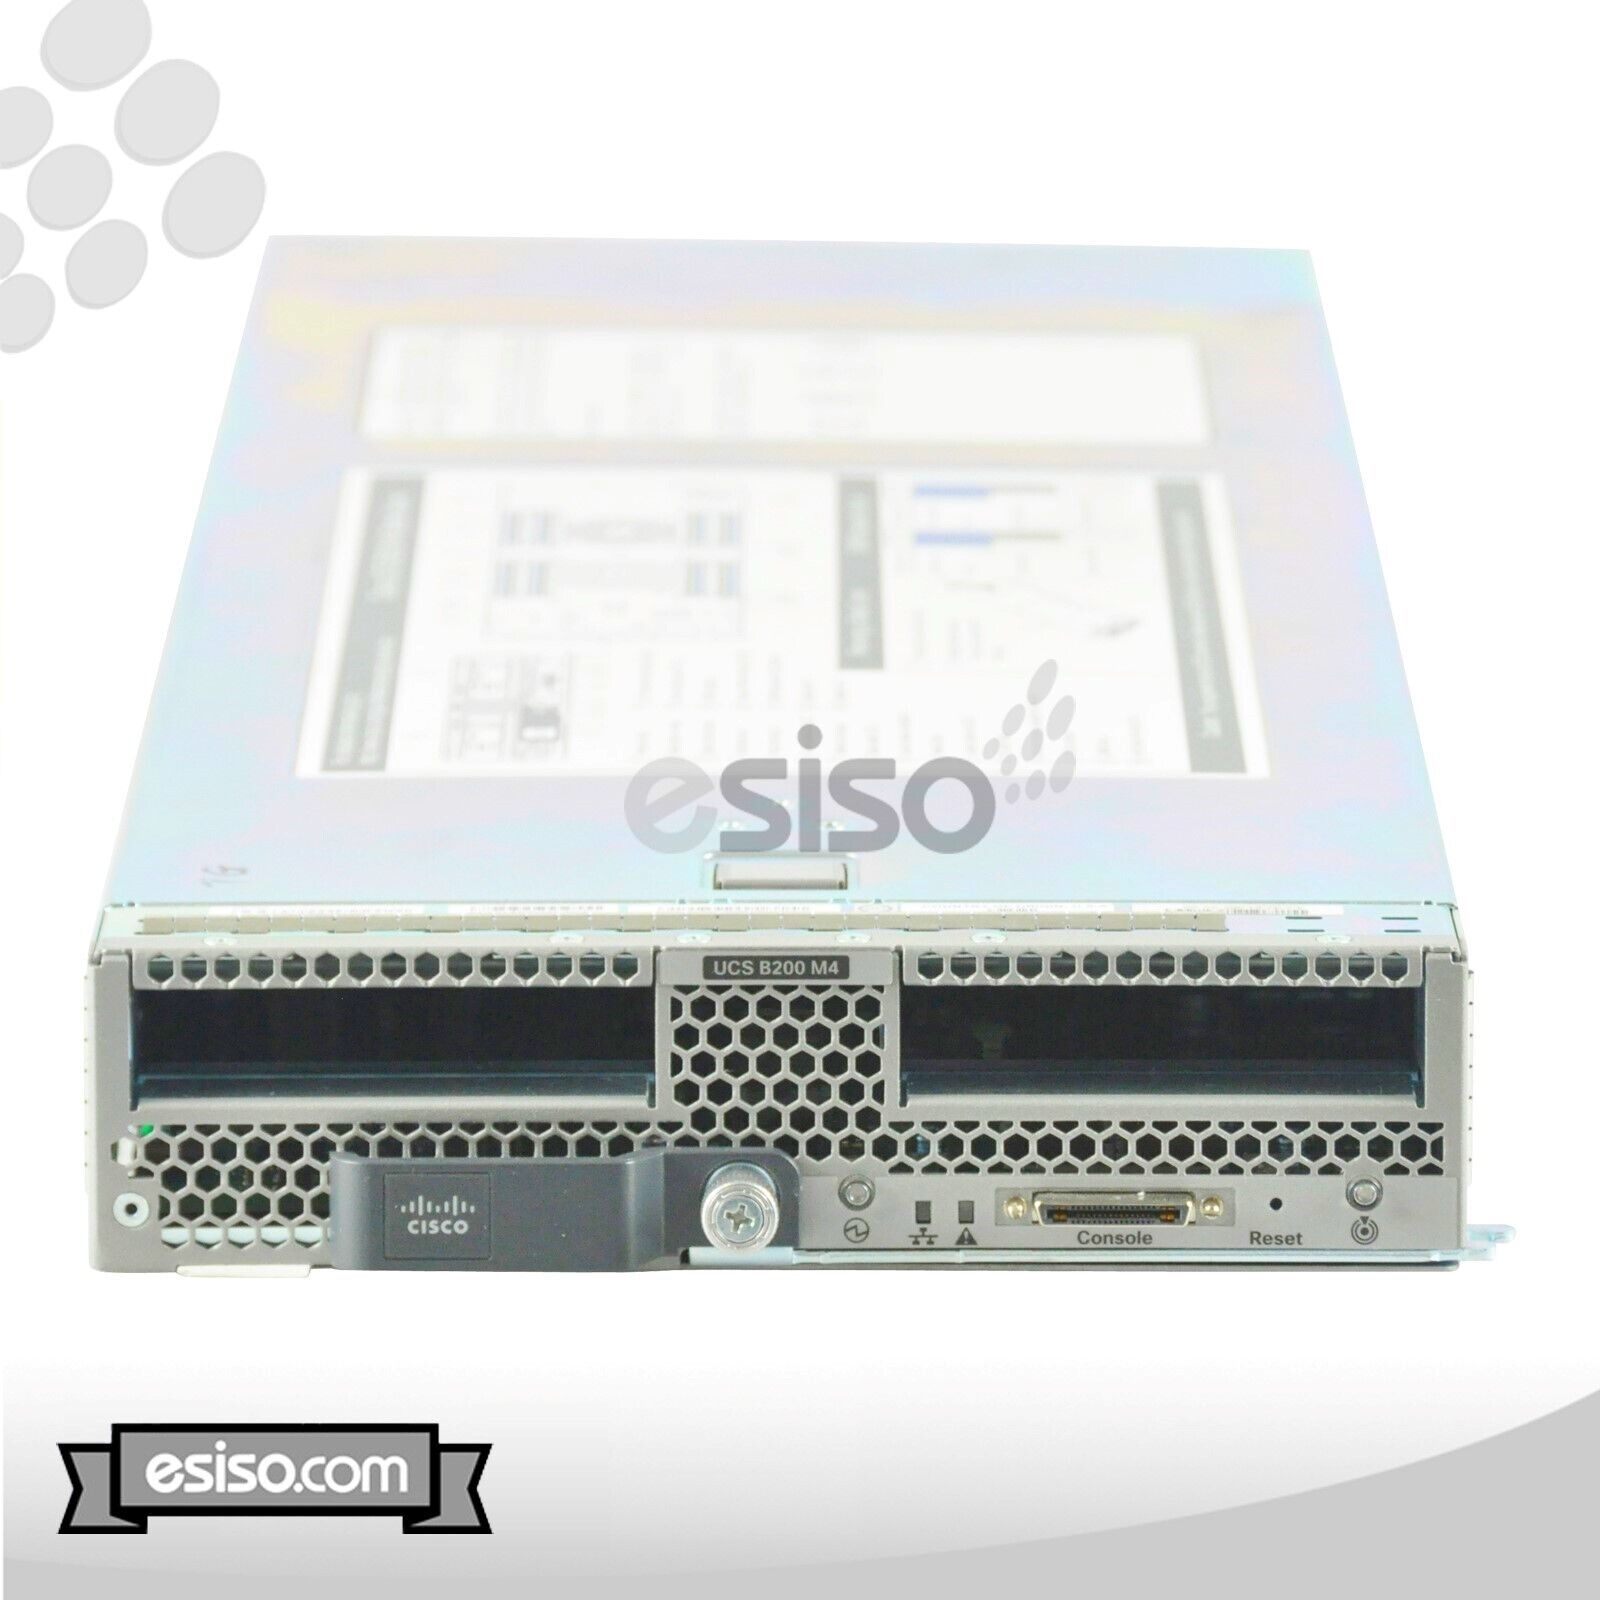 CISCO UCS B200 M4 BLADE 2x 10 CORE E5-2660v3 2.6GHz 128GB RAM NO HDD